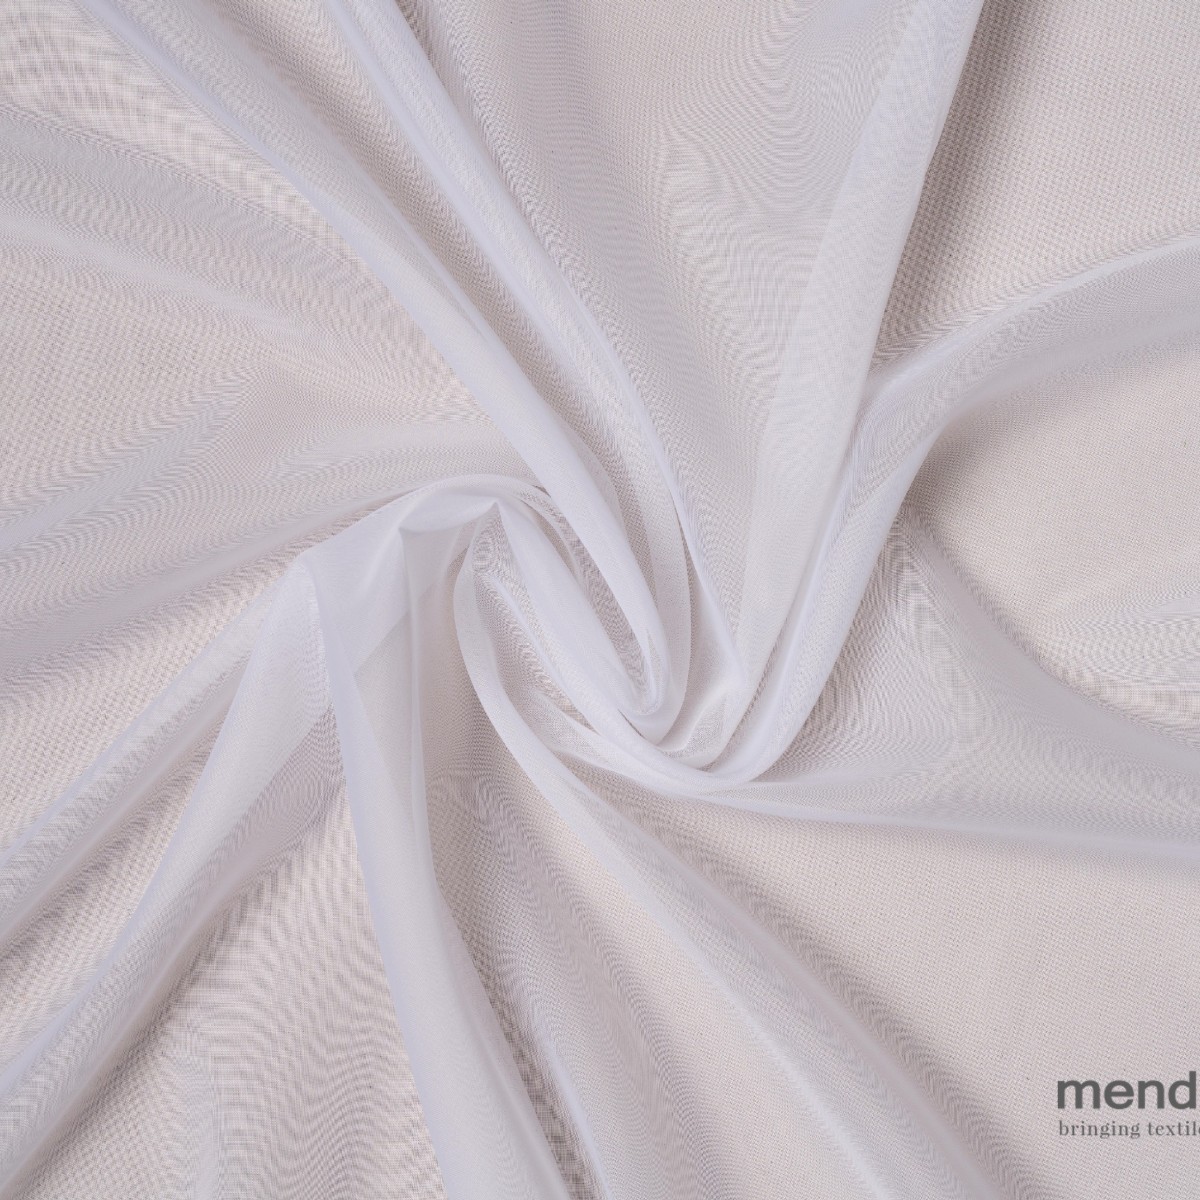 Perdele Mendola fabrics MDF-14-VOILE. Conține culorile: Gri, Telegri 4, Galben, Galben Pastel, Aluminiu, Aluminiu-Gri, Violet, Violet-Mov